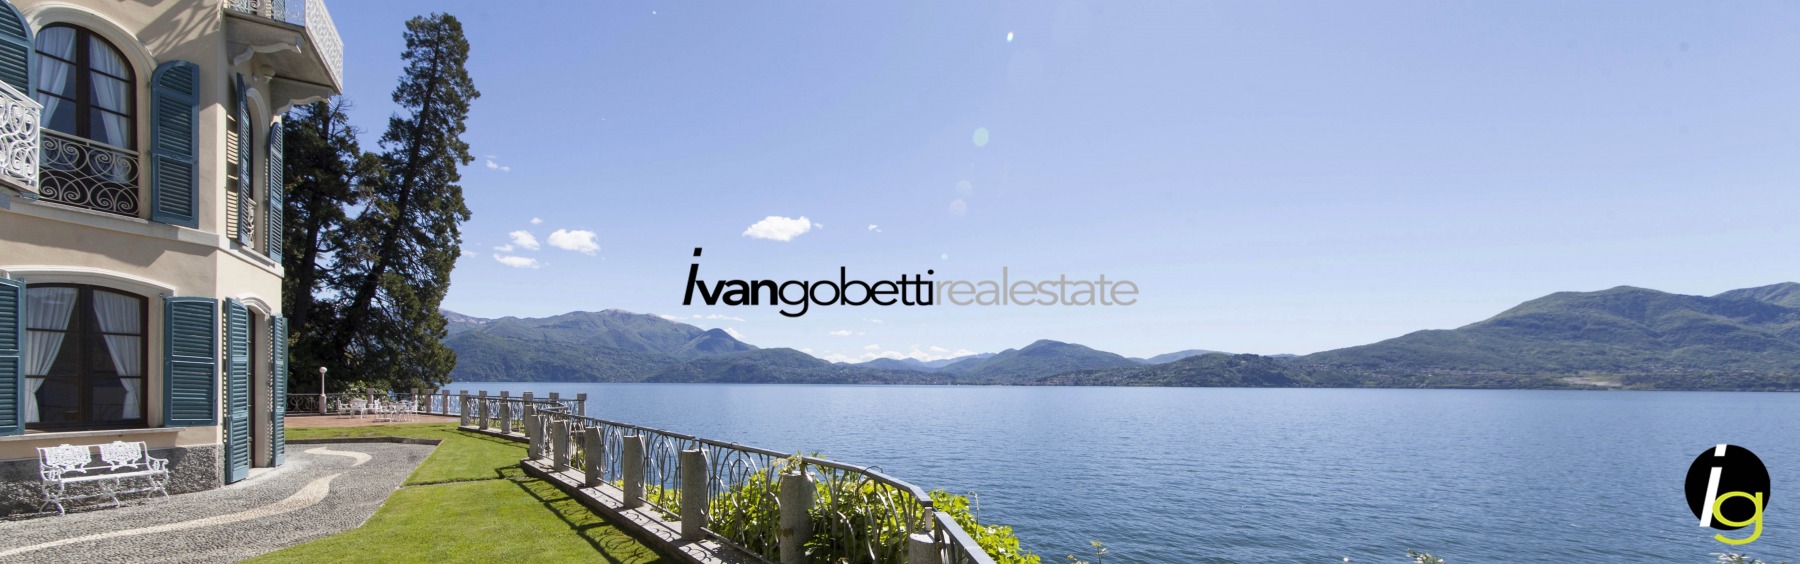 Villa Liberty fronte lago in vendita sul Lago Maggiore<br/><span>Codice prodotto: 1939